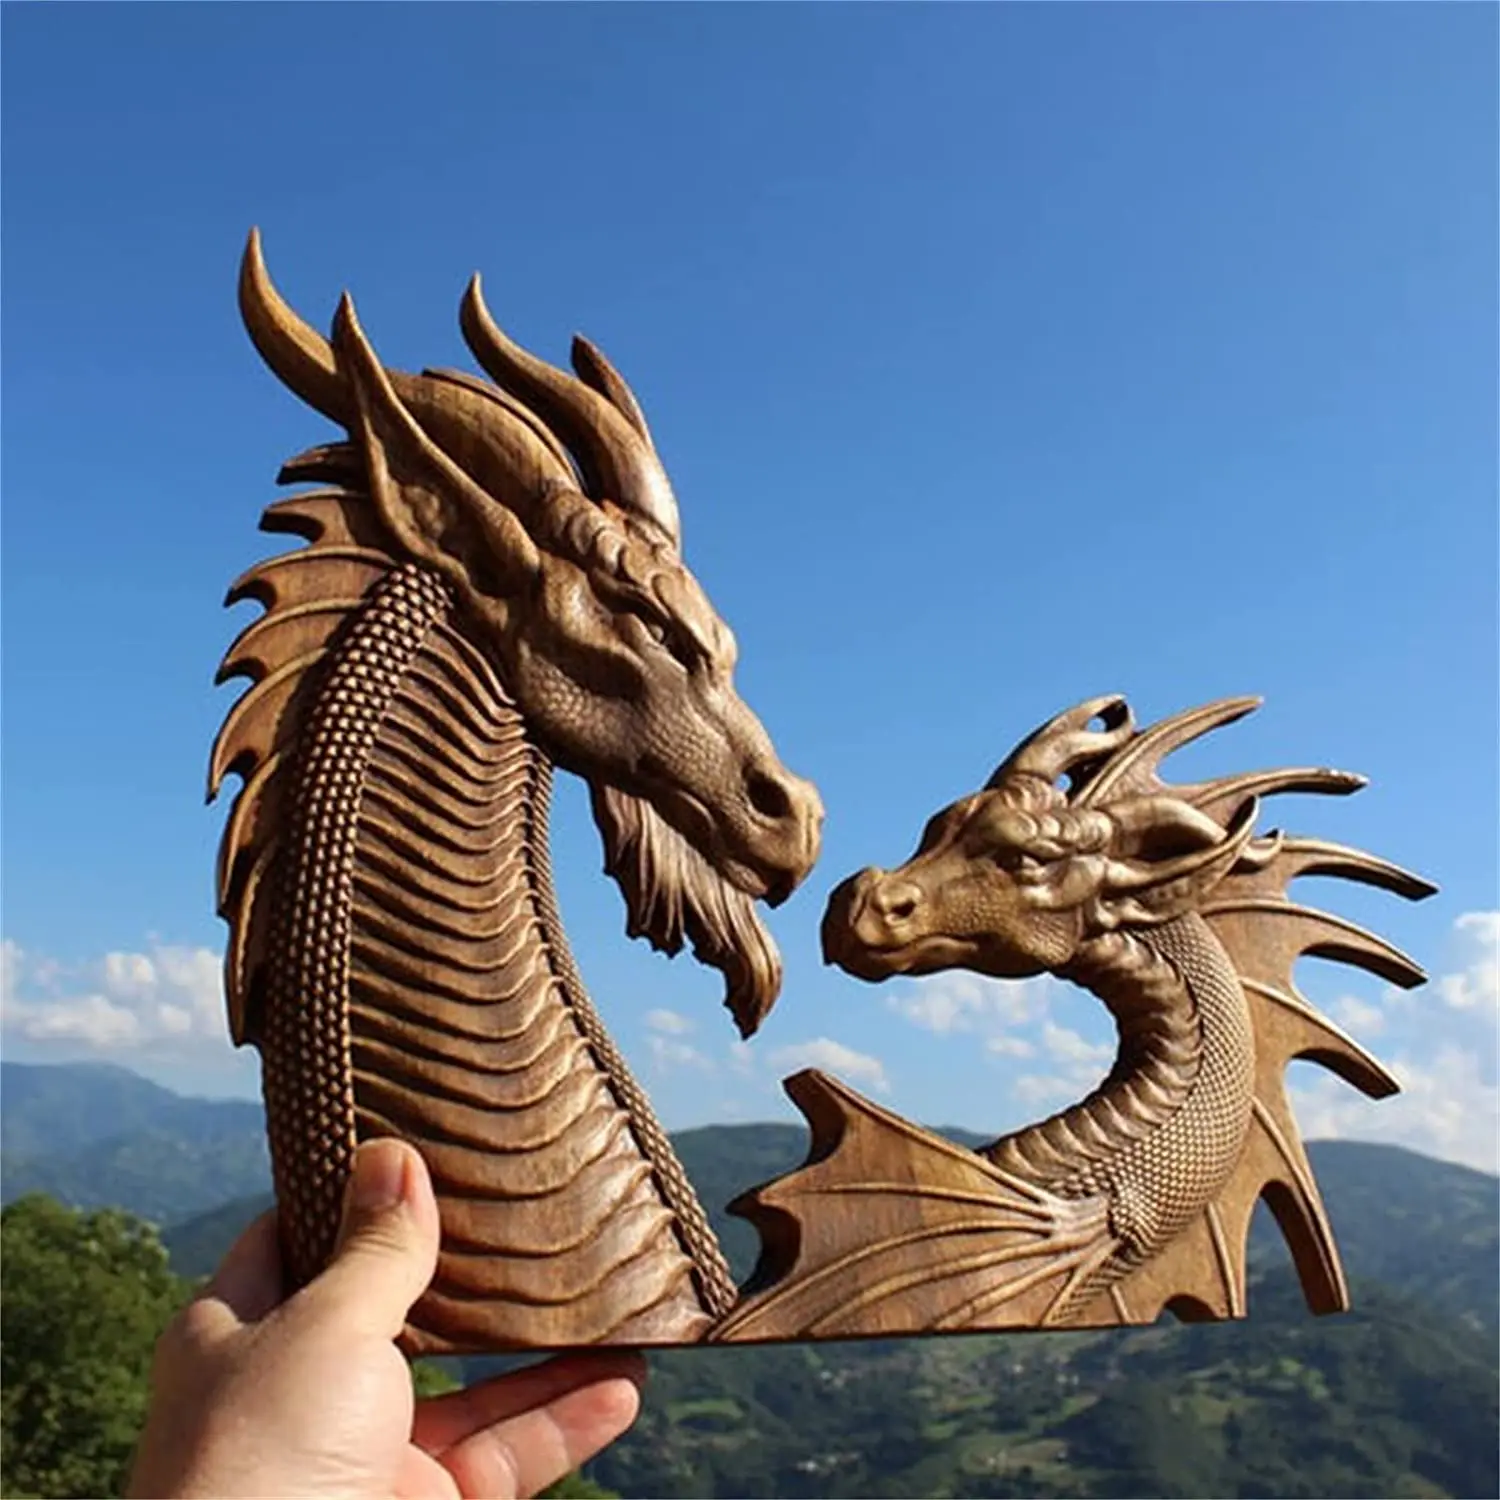 Decoración de pared de estatua de dragón, arte de dragón tallado en madera, colgante de pared creativo de dragón nórdico tallado en madera, bohemio decorativo para el hogar